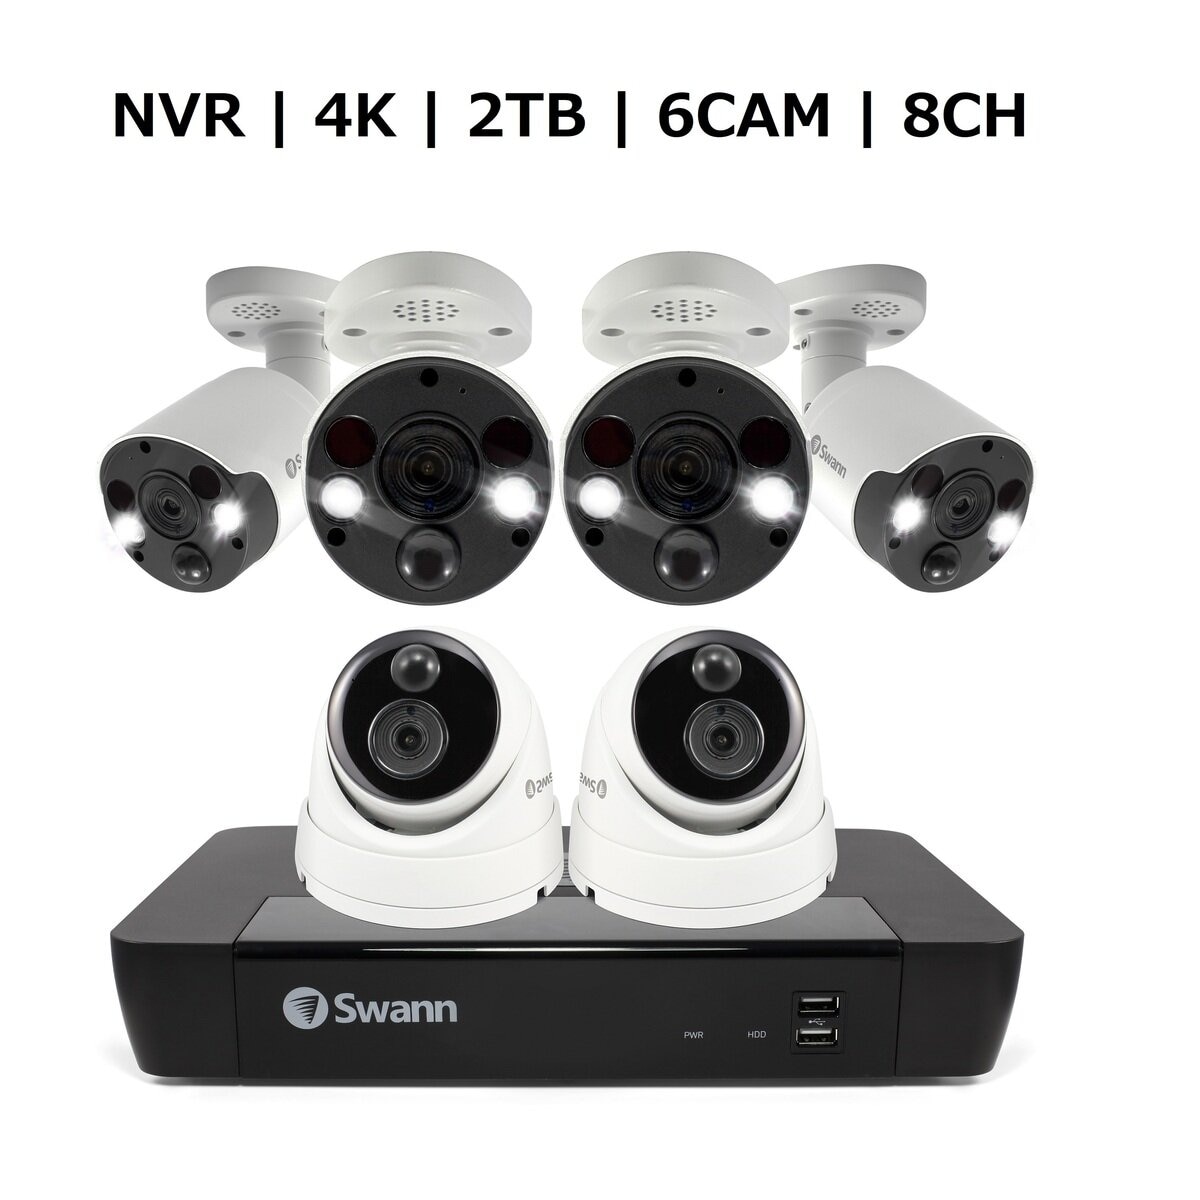 SWANN 4K ウルトラHD NVR-8580 熱感知 顔認識 防犯カメラ - 防犯カメラ